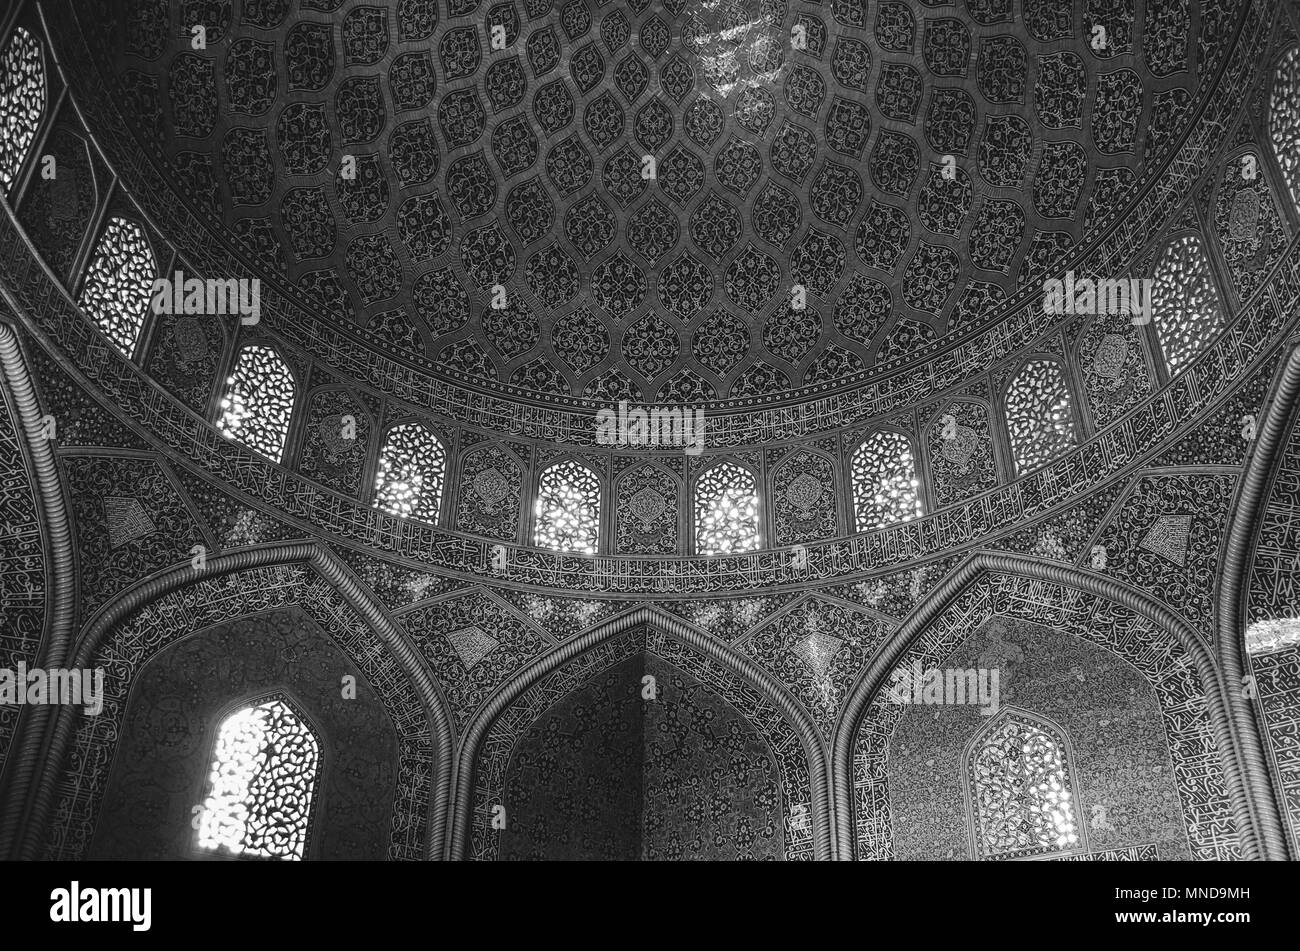 Vue de l'intérieur de haute coupole de la mosquée du Shah en Iran, Sfahan couvert de tuiles polychromes en mosaïque, destinée à donner au spectateur un sentiment de transcendance céleste Banque D'Images